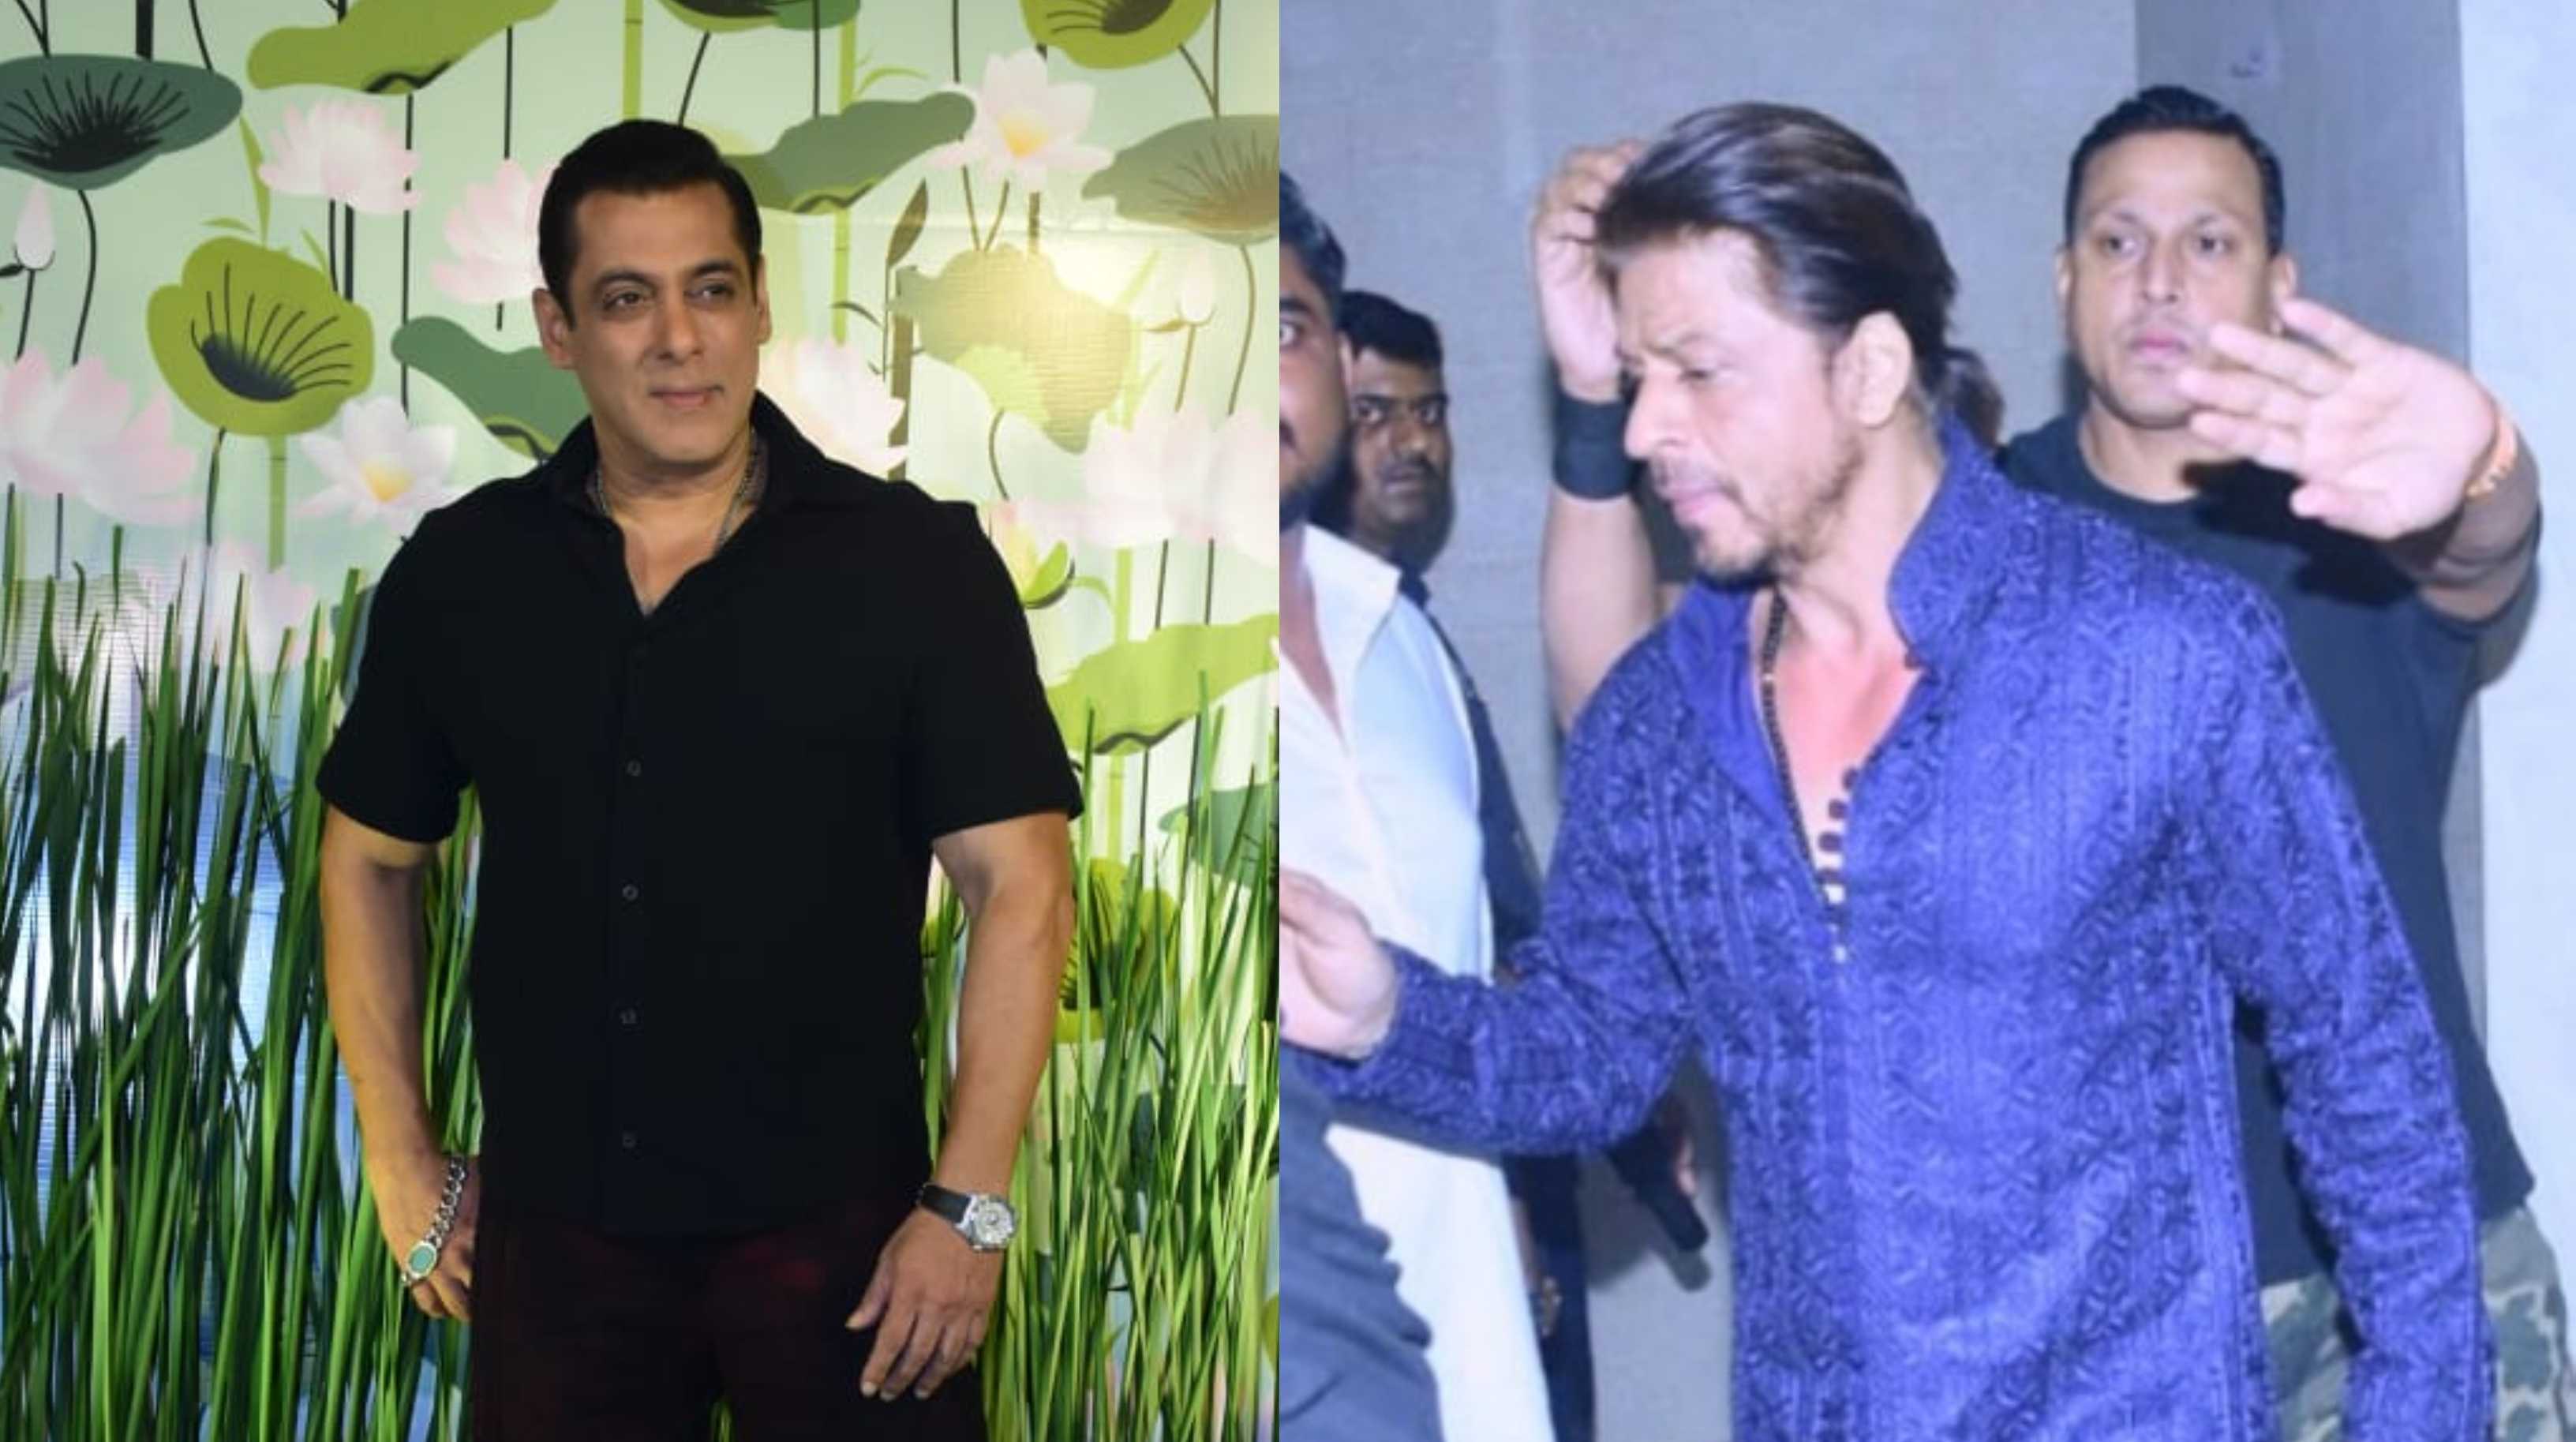 ‘Pathaan Toh Aayega Hi’: After his Tiger 3 cameo, Shah Rukh Khan joins Salman Khan for Diwali celebrations; fans react